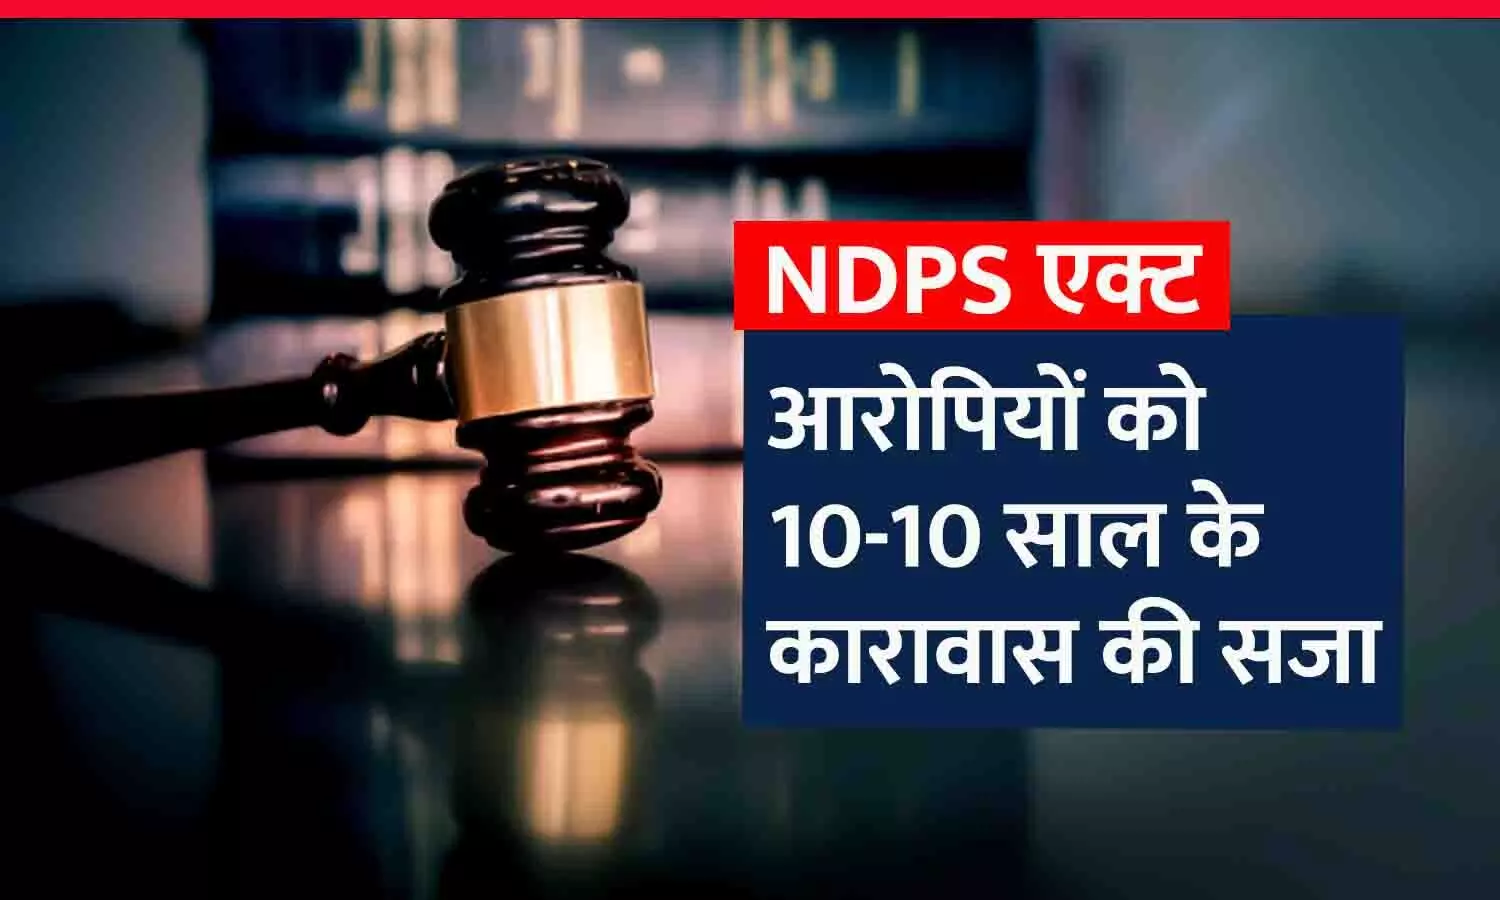 रीवा के NDPS कोर्ट ने सुनाया फैसला: नशीली कफ सिरप बेचने वाले दो आरोपियों को 10-10 वर्ष का कारावास, 1-1 लाख रुपए का अर्थदंड